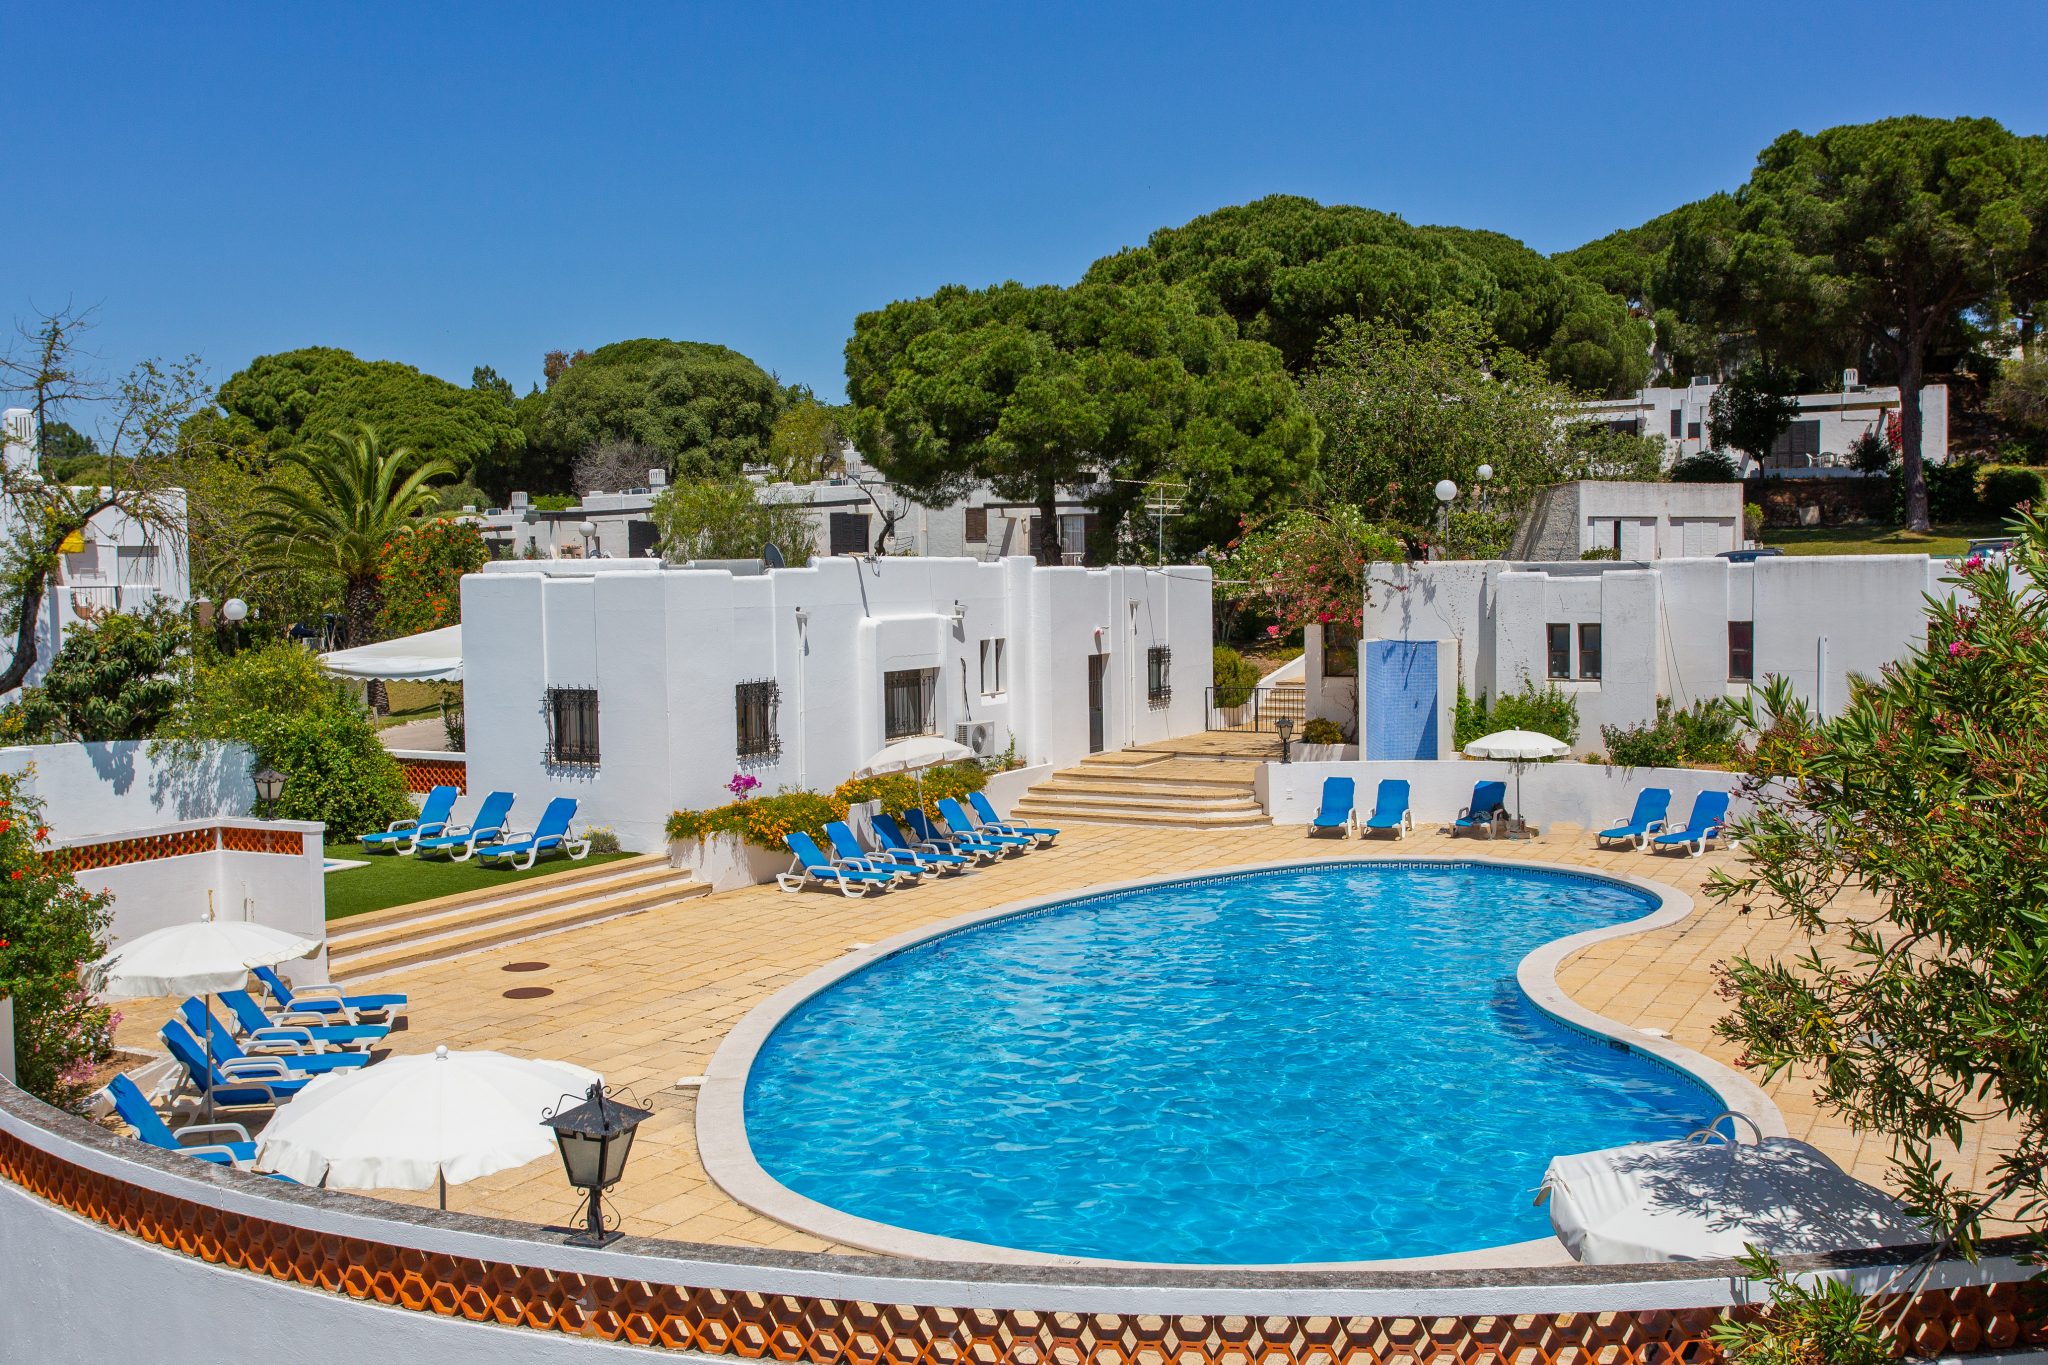 Prado do Golf accommodation with pool in vilamoura Algarve